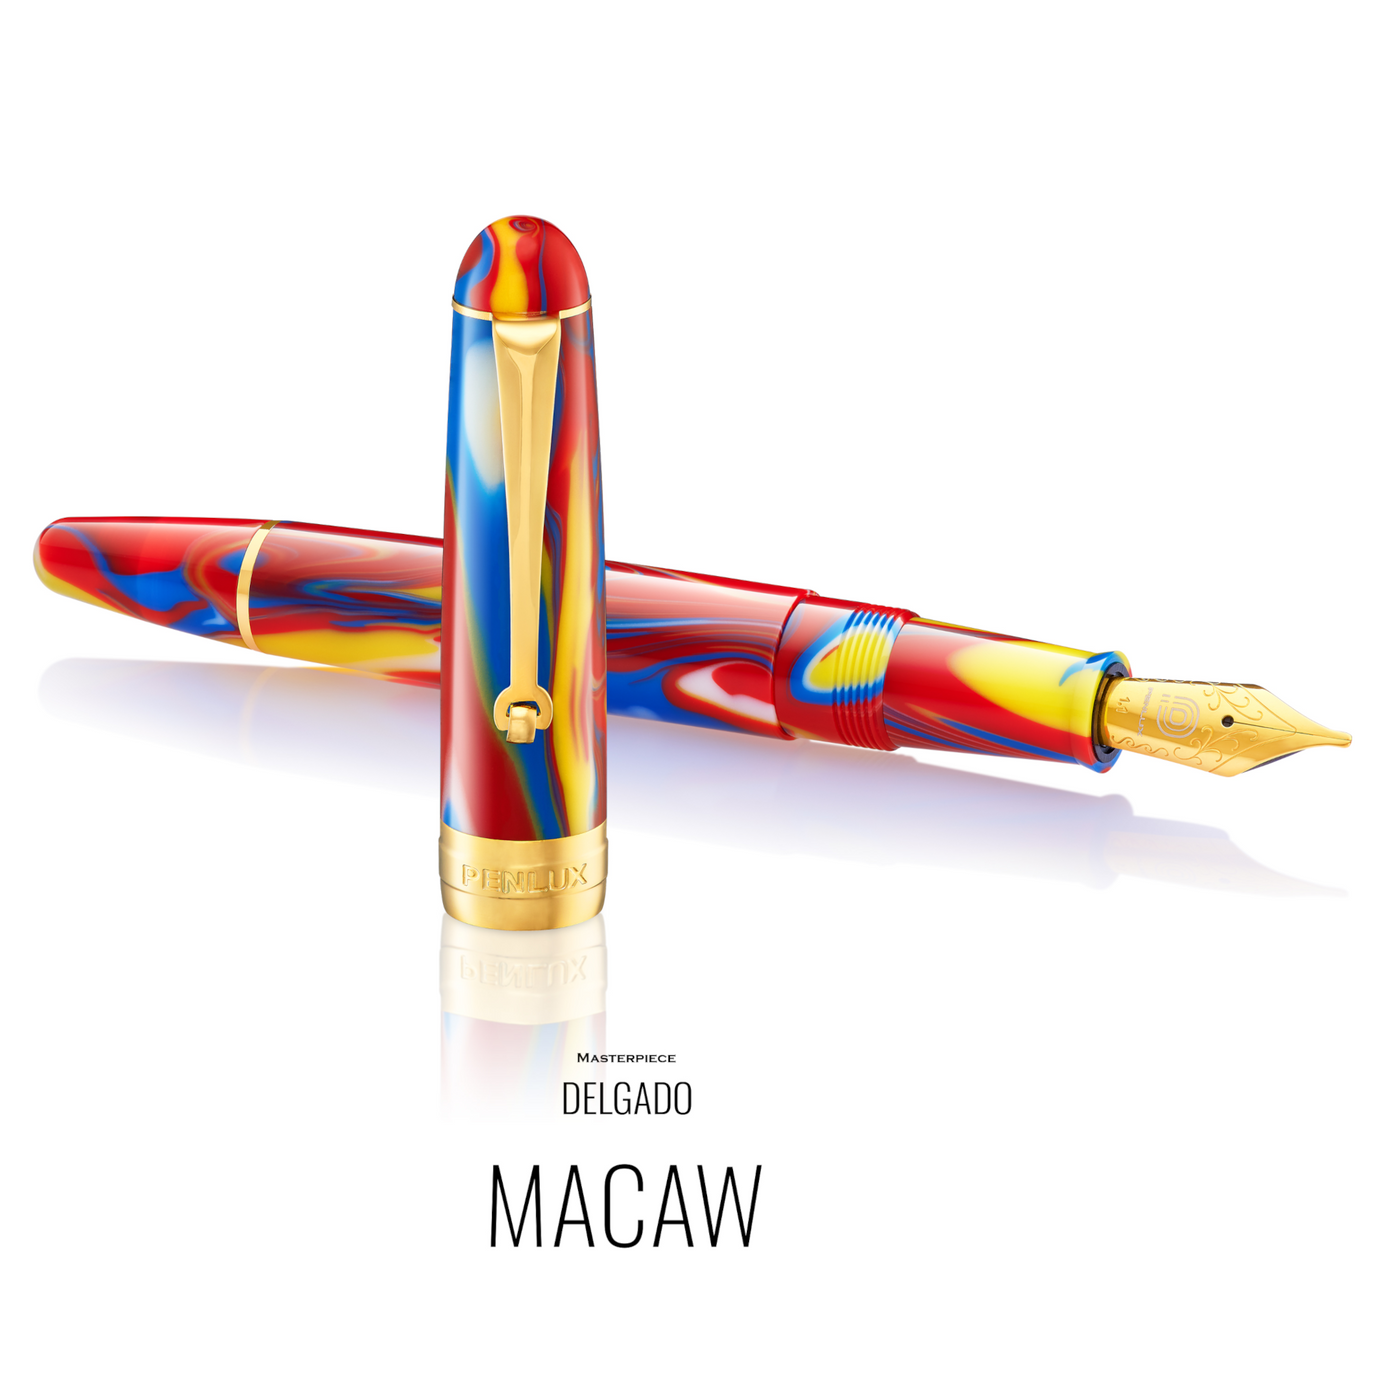 Penlux Masterpiece Delgado Fountain Pen - Macaw